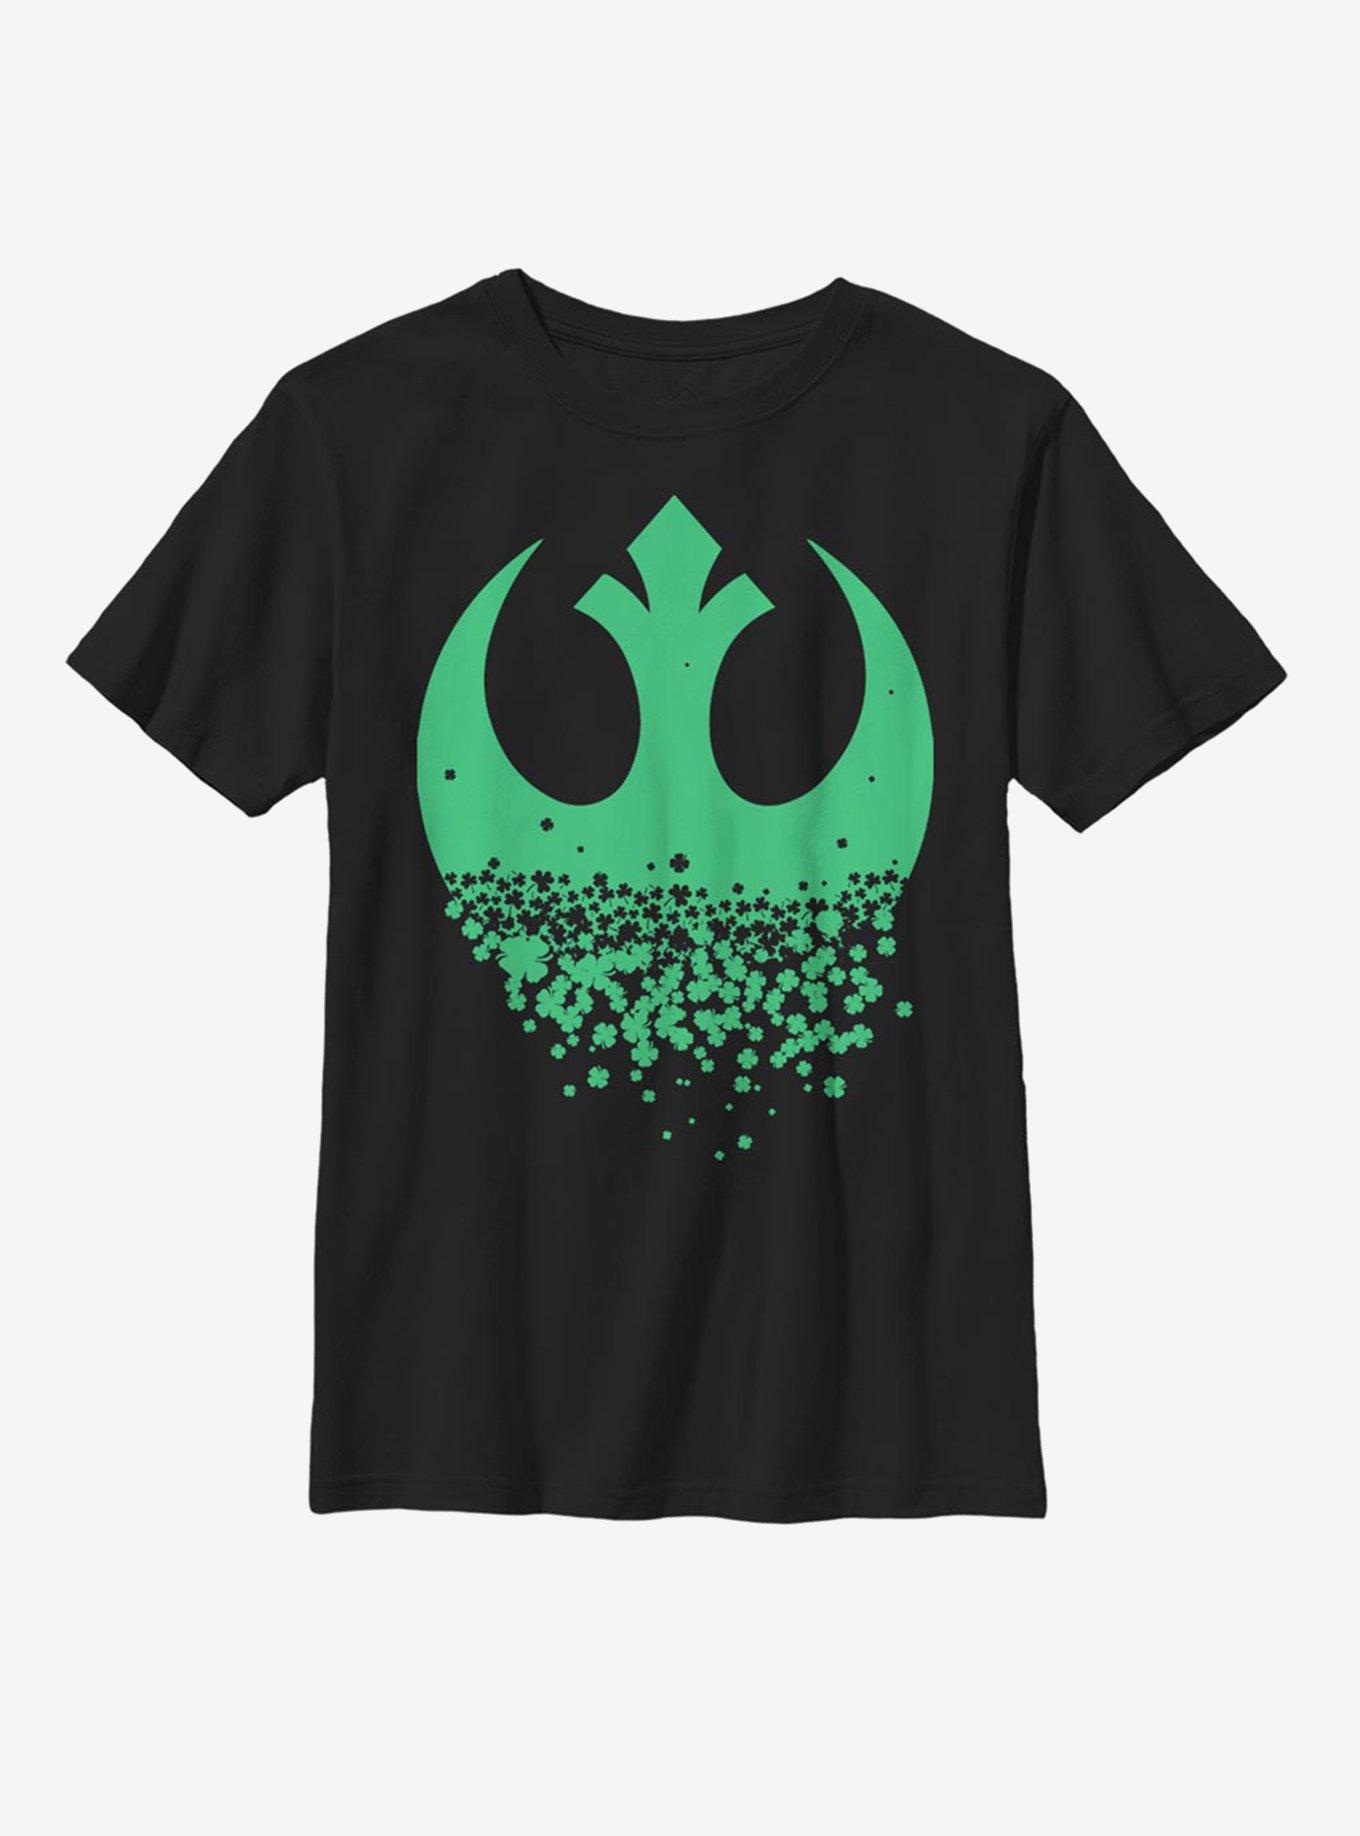 Star Wars Rebel Clover Youth T-Shirt, BLACK, hi-res